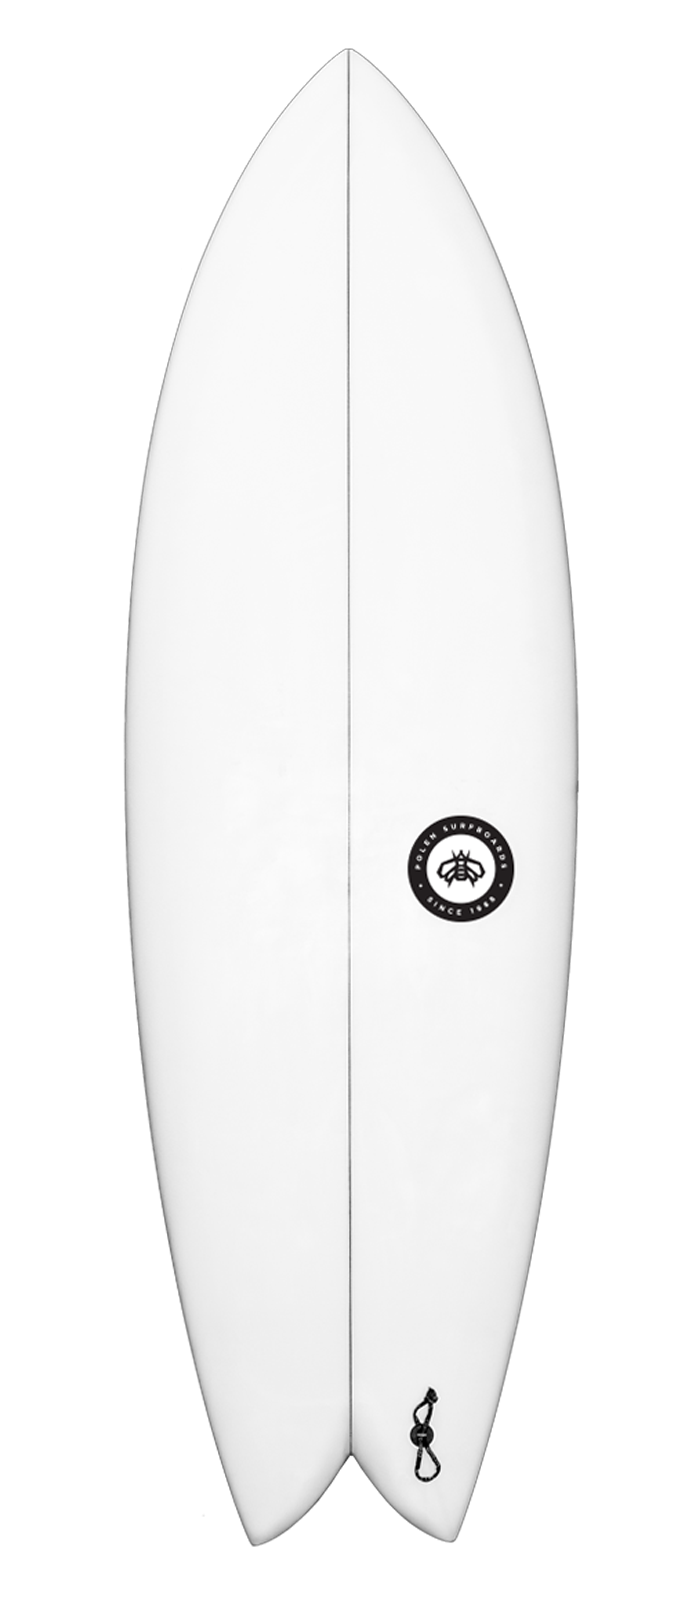 SAIL FISH surfboard model deck